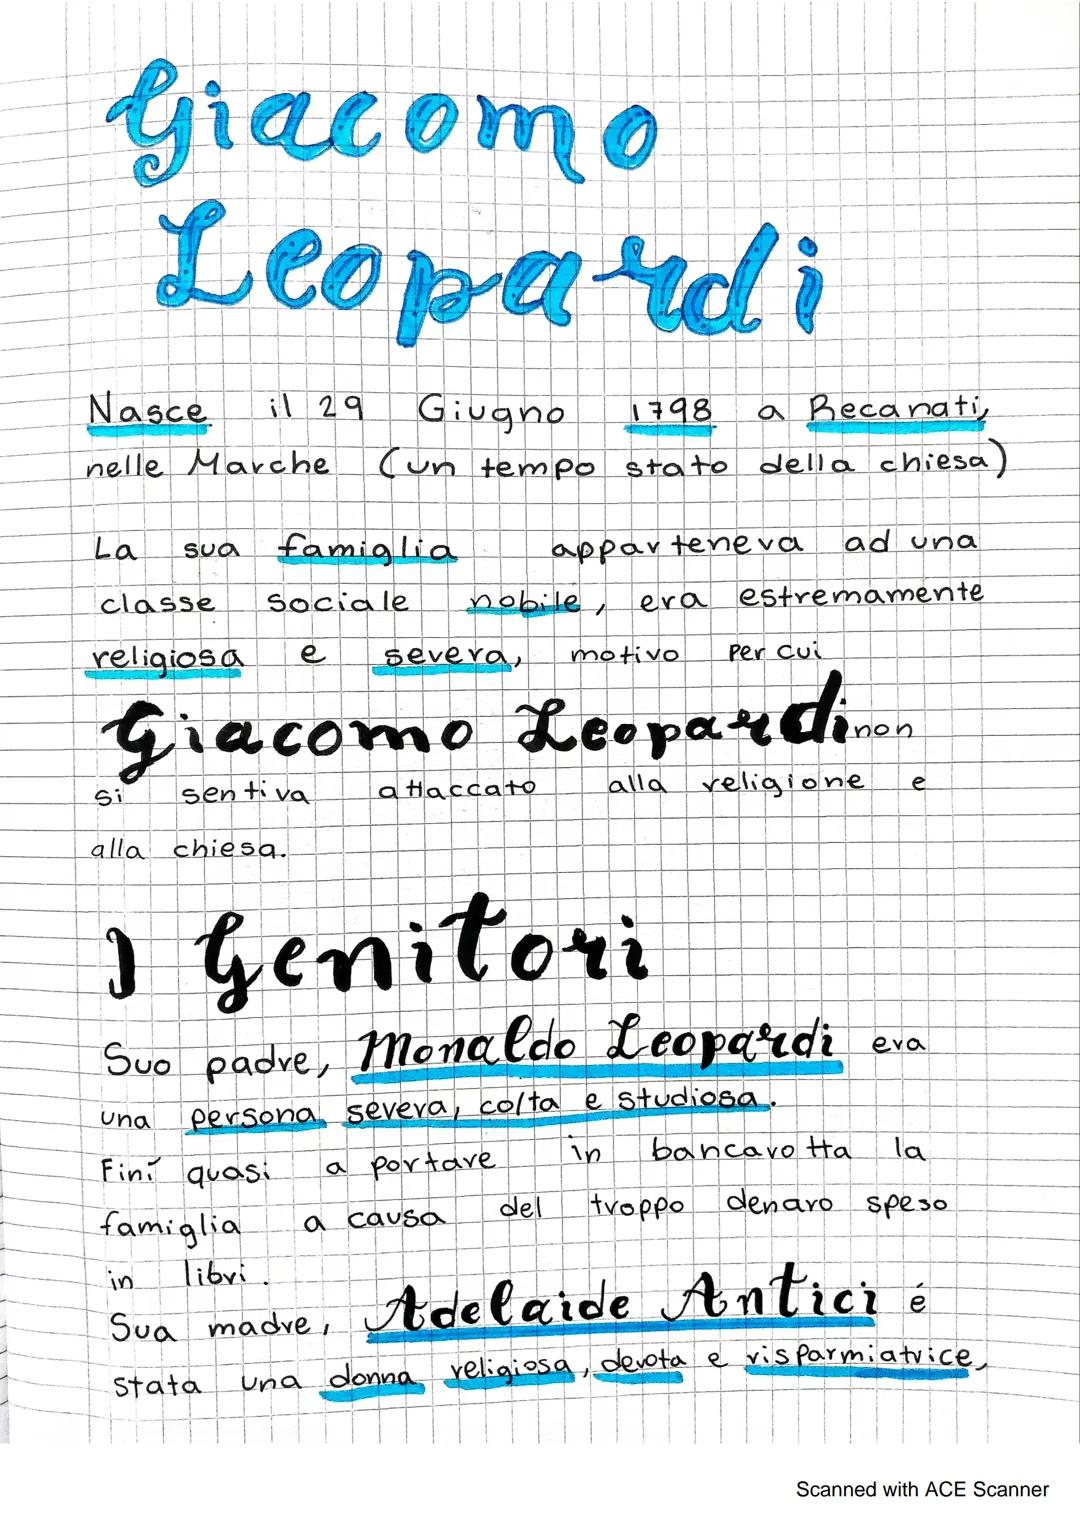 Giacomo
Leopardi
Nasce il 29 Giugno 1798 a Recanati
nelle Marche (un tempo stato della chiesa)
La
classe
religiosa
ad una
apparteneva
Social